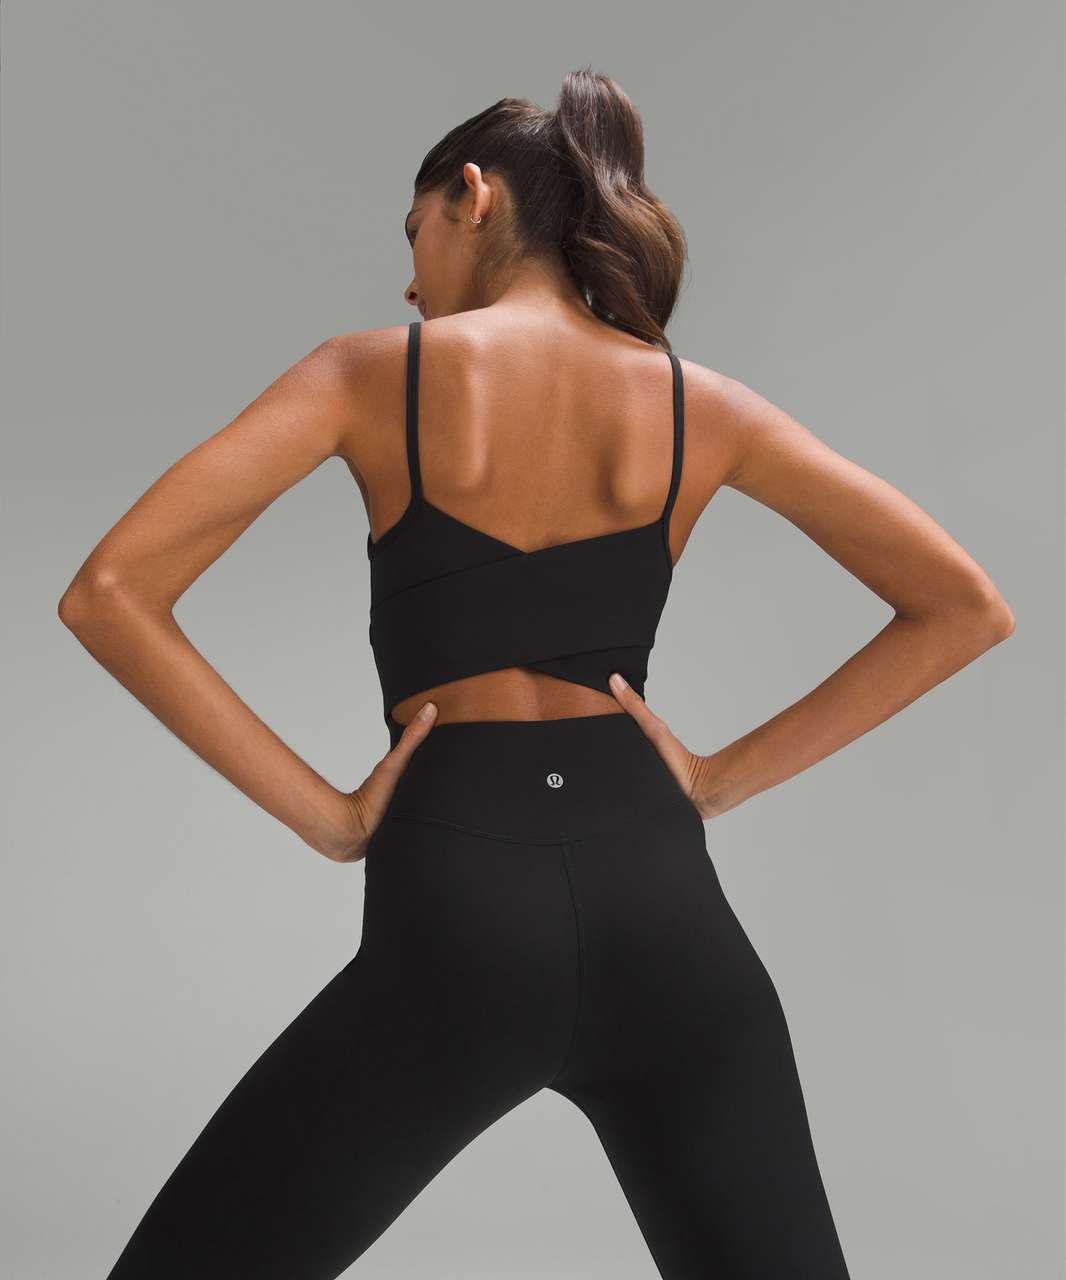 Lululemon Cross-Back Nulu Yoga Bodysuit 25" - Black